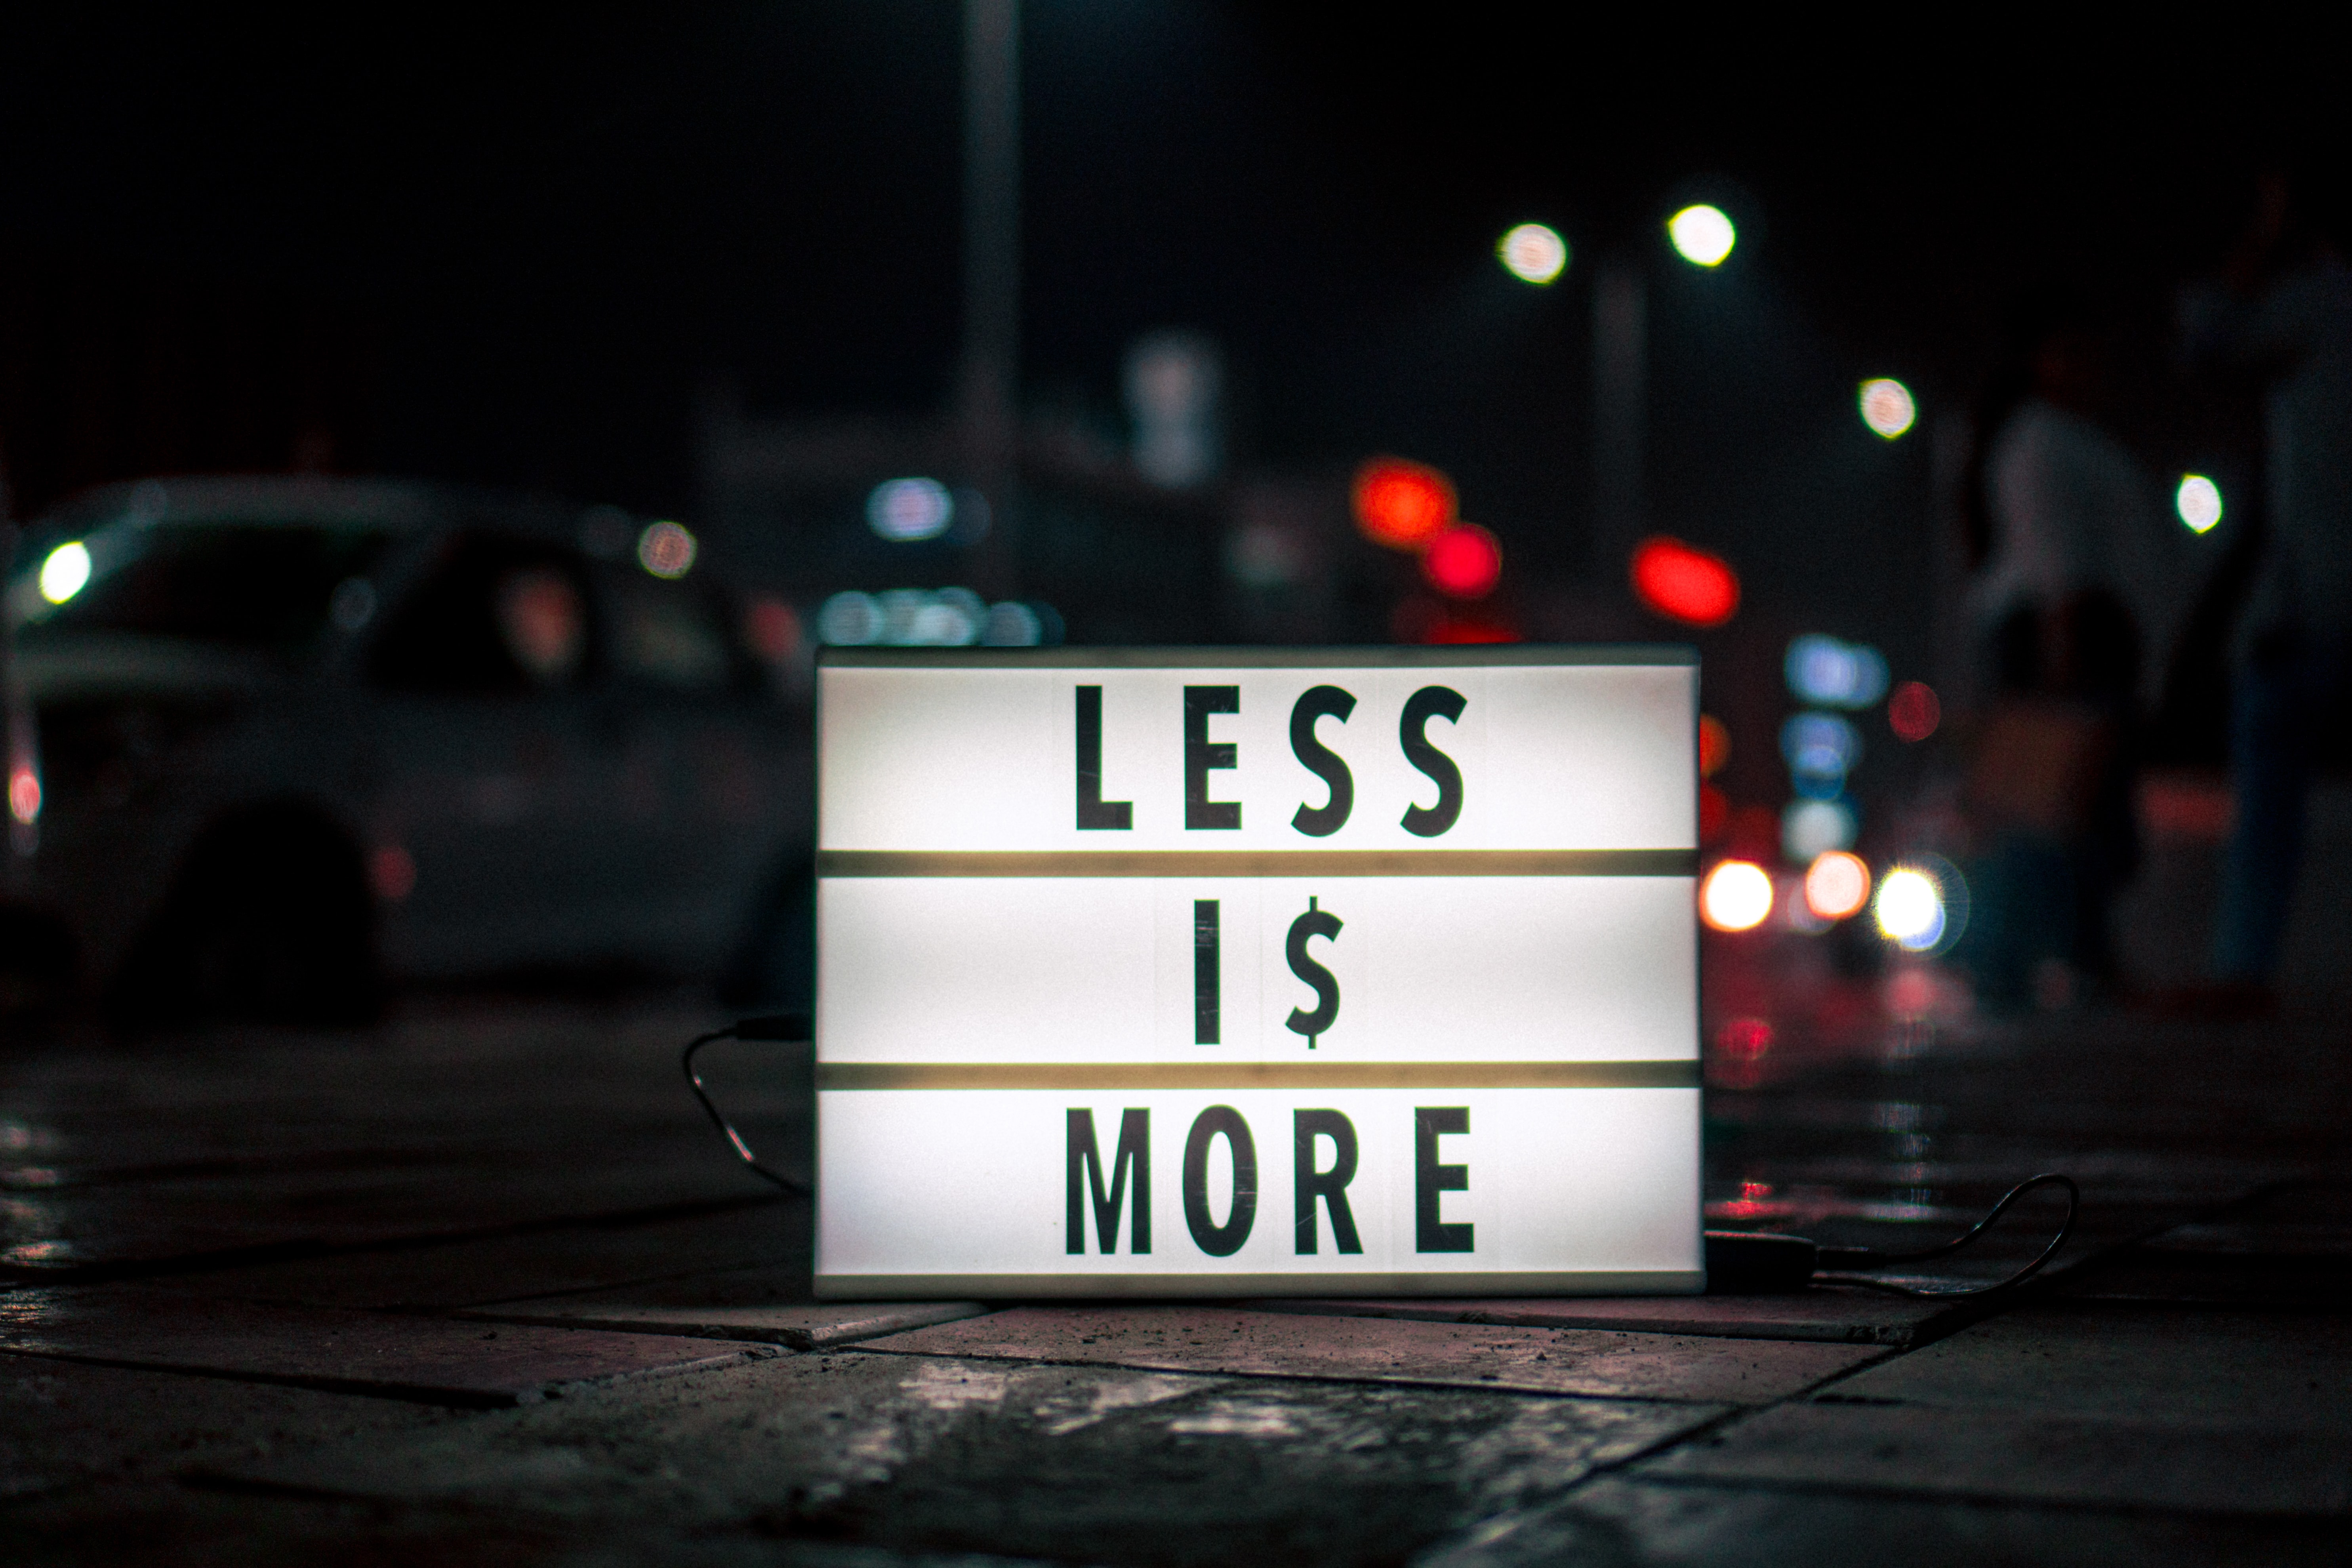 Foto von einem Leuchtschild nachts auf offener Straße. Darauf steht: "less is more".